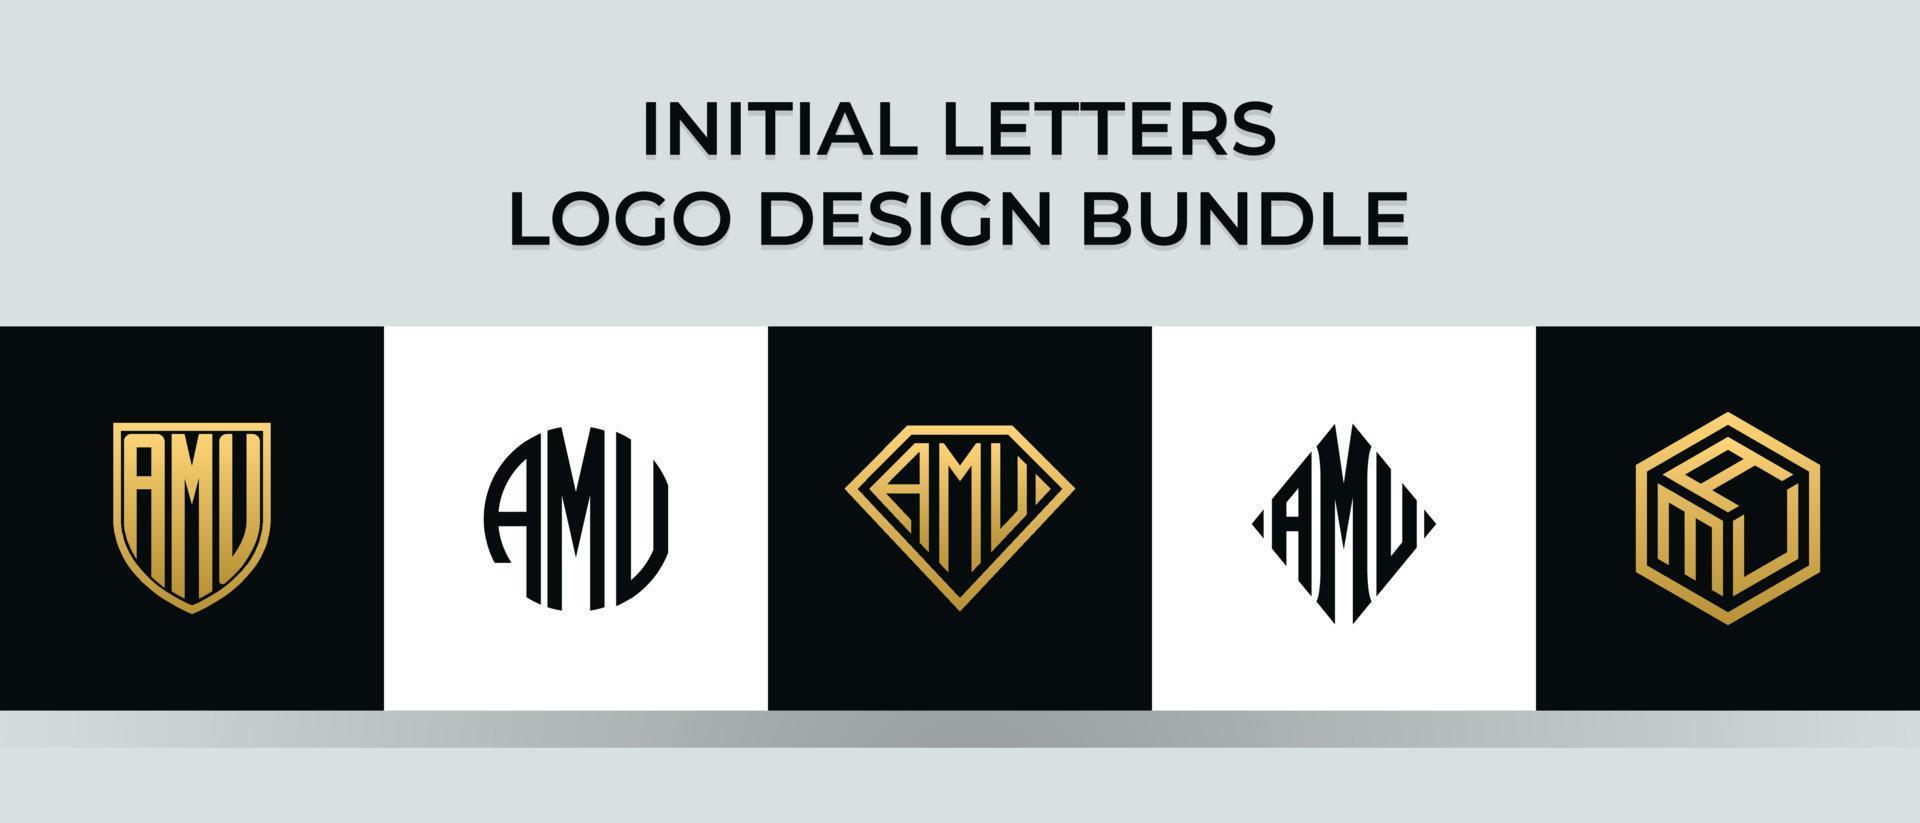 Initial letters AMU logo designs Bundle vector